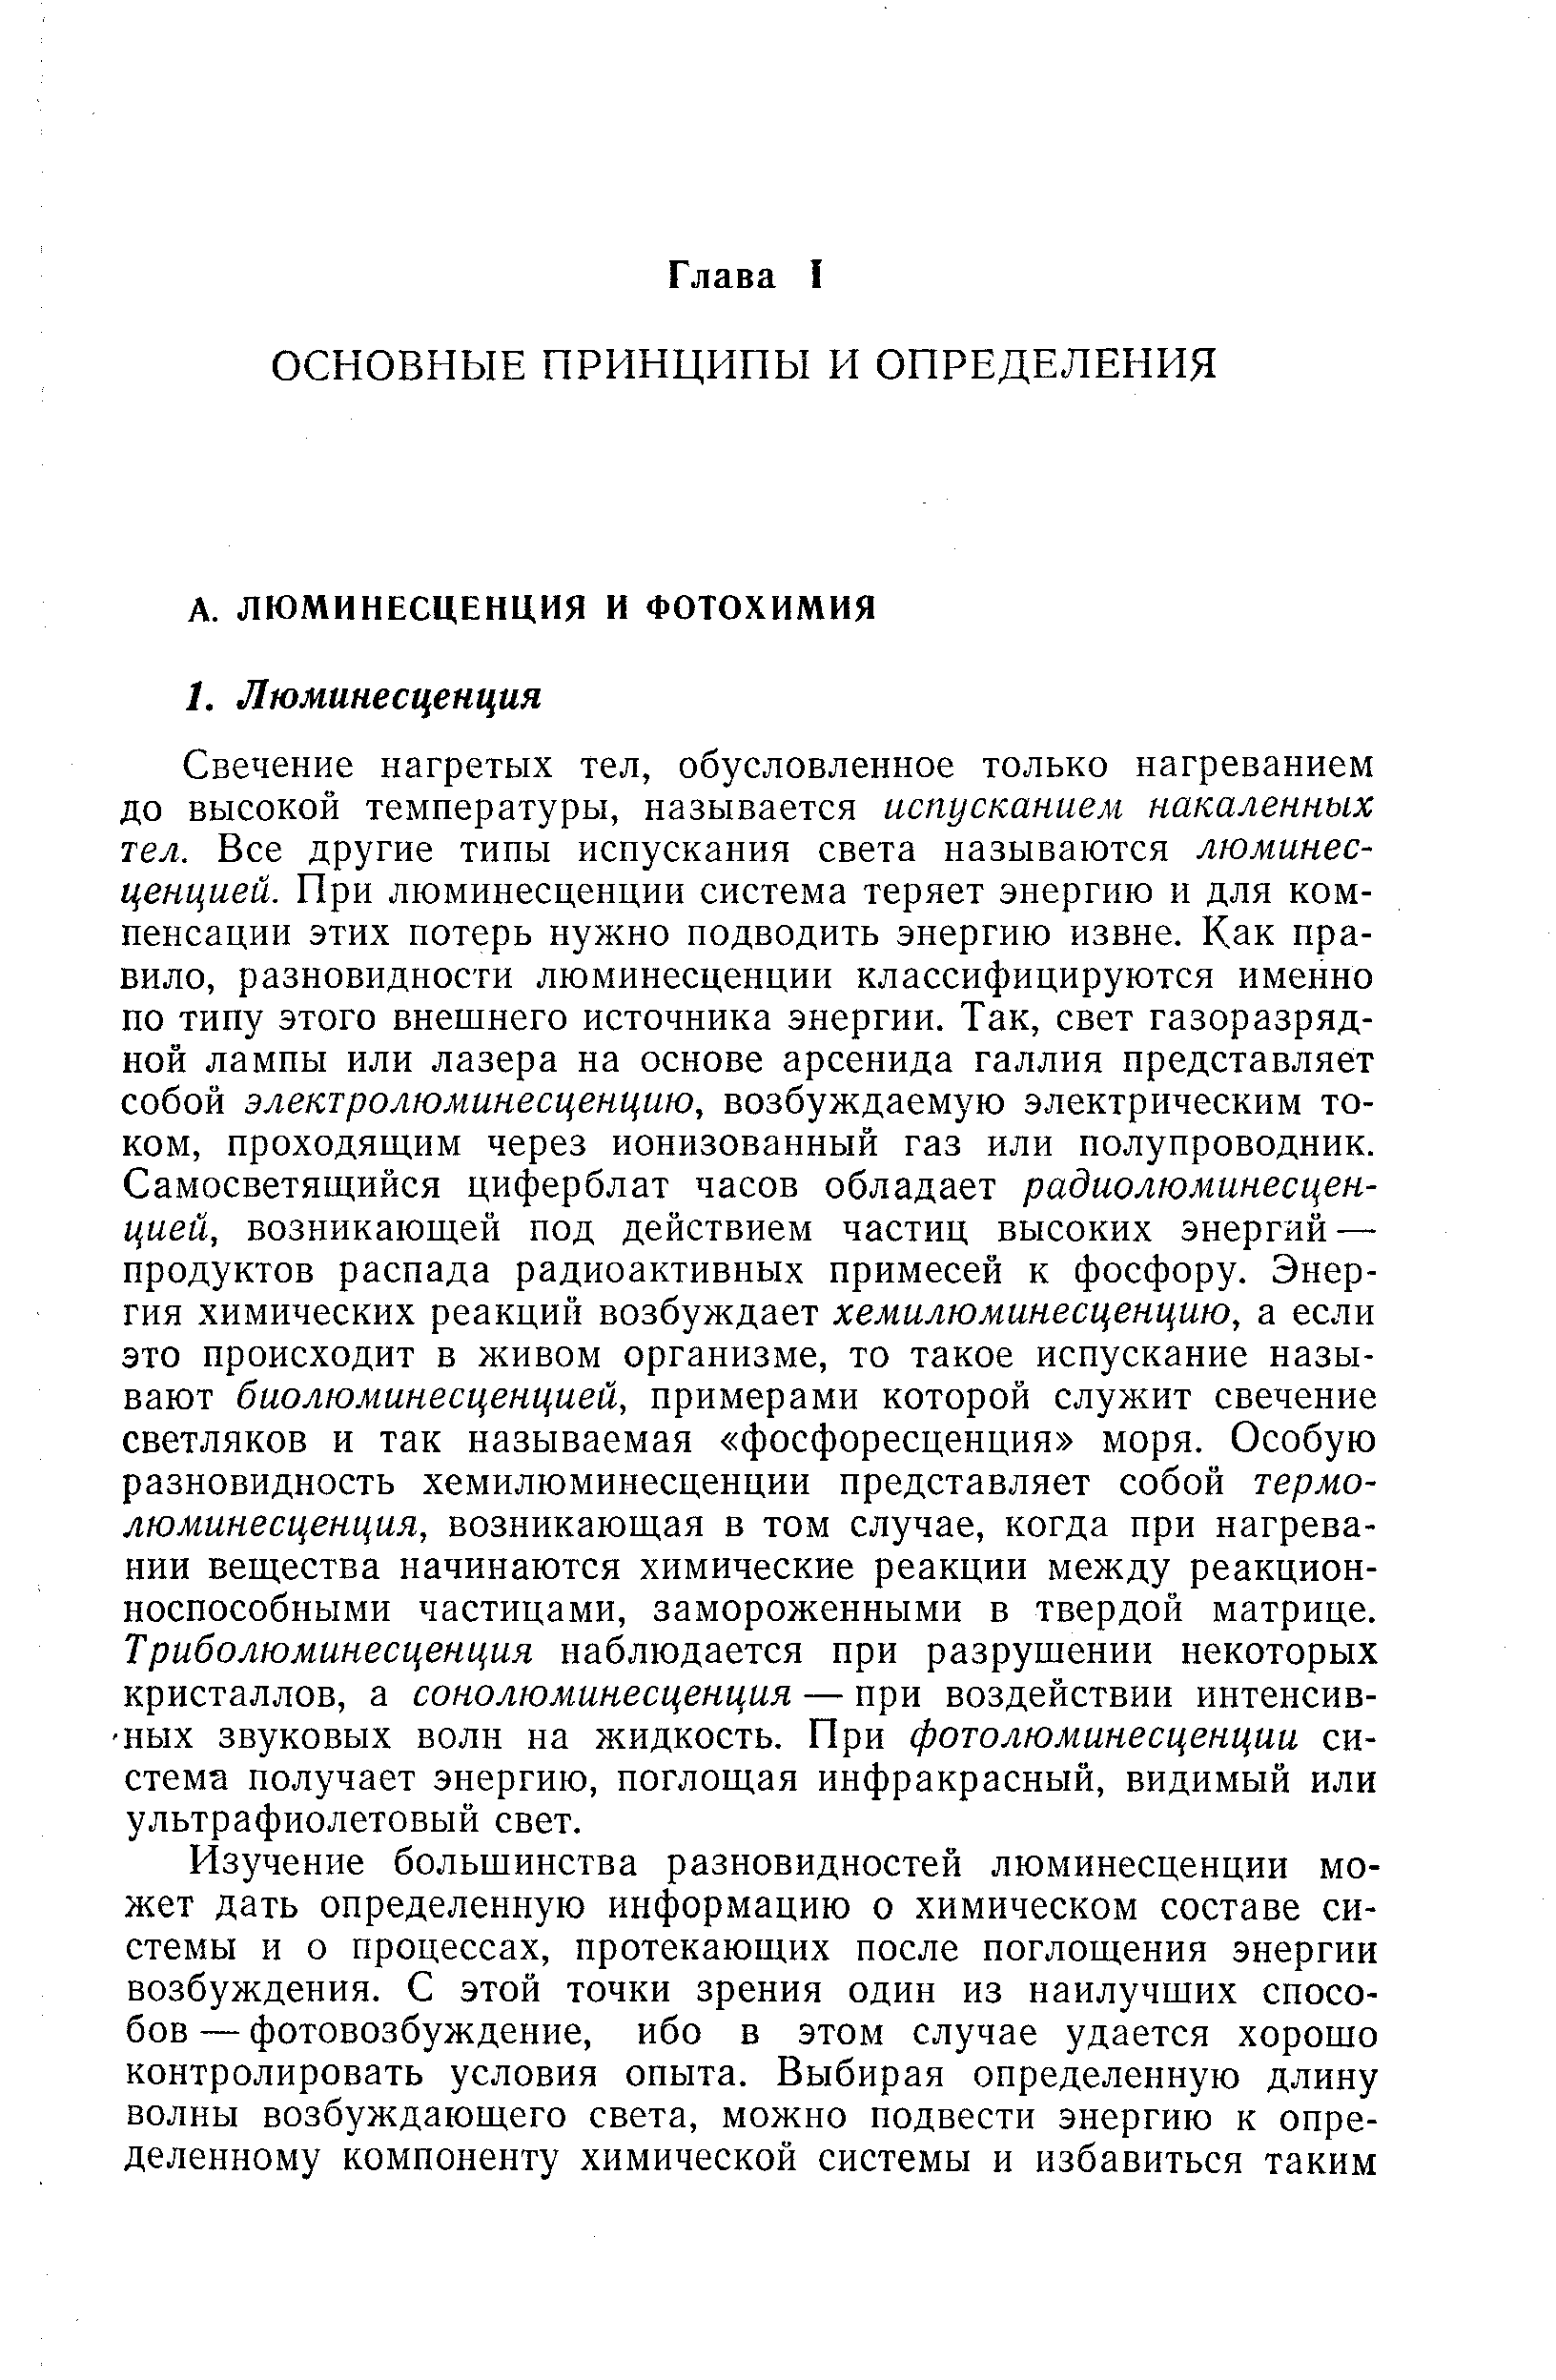 Люминесценция и фотохимия - Справочник химика 21